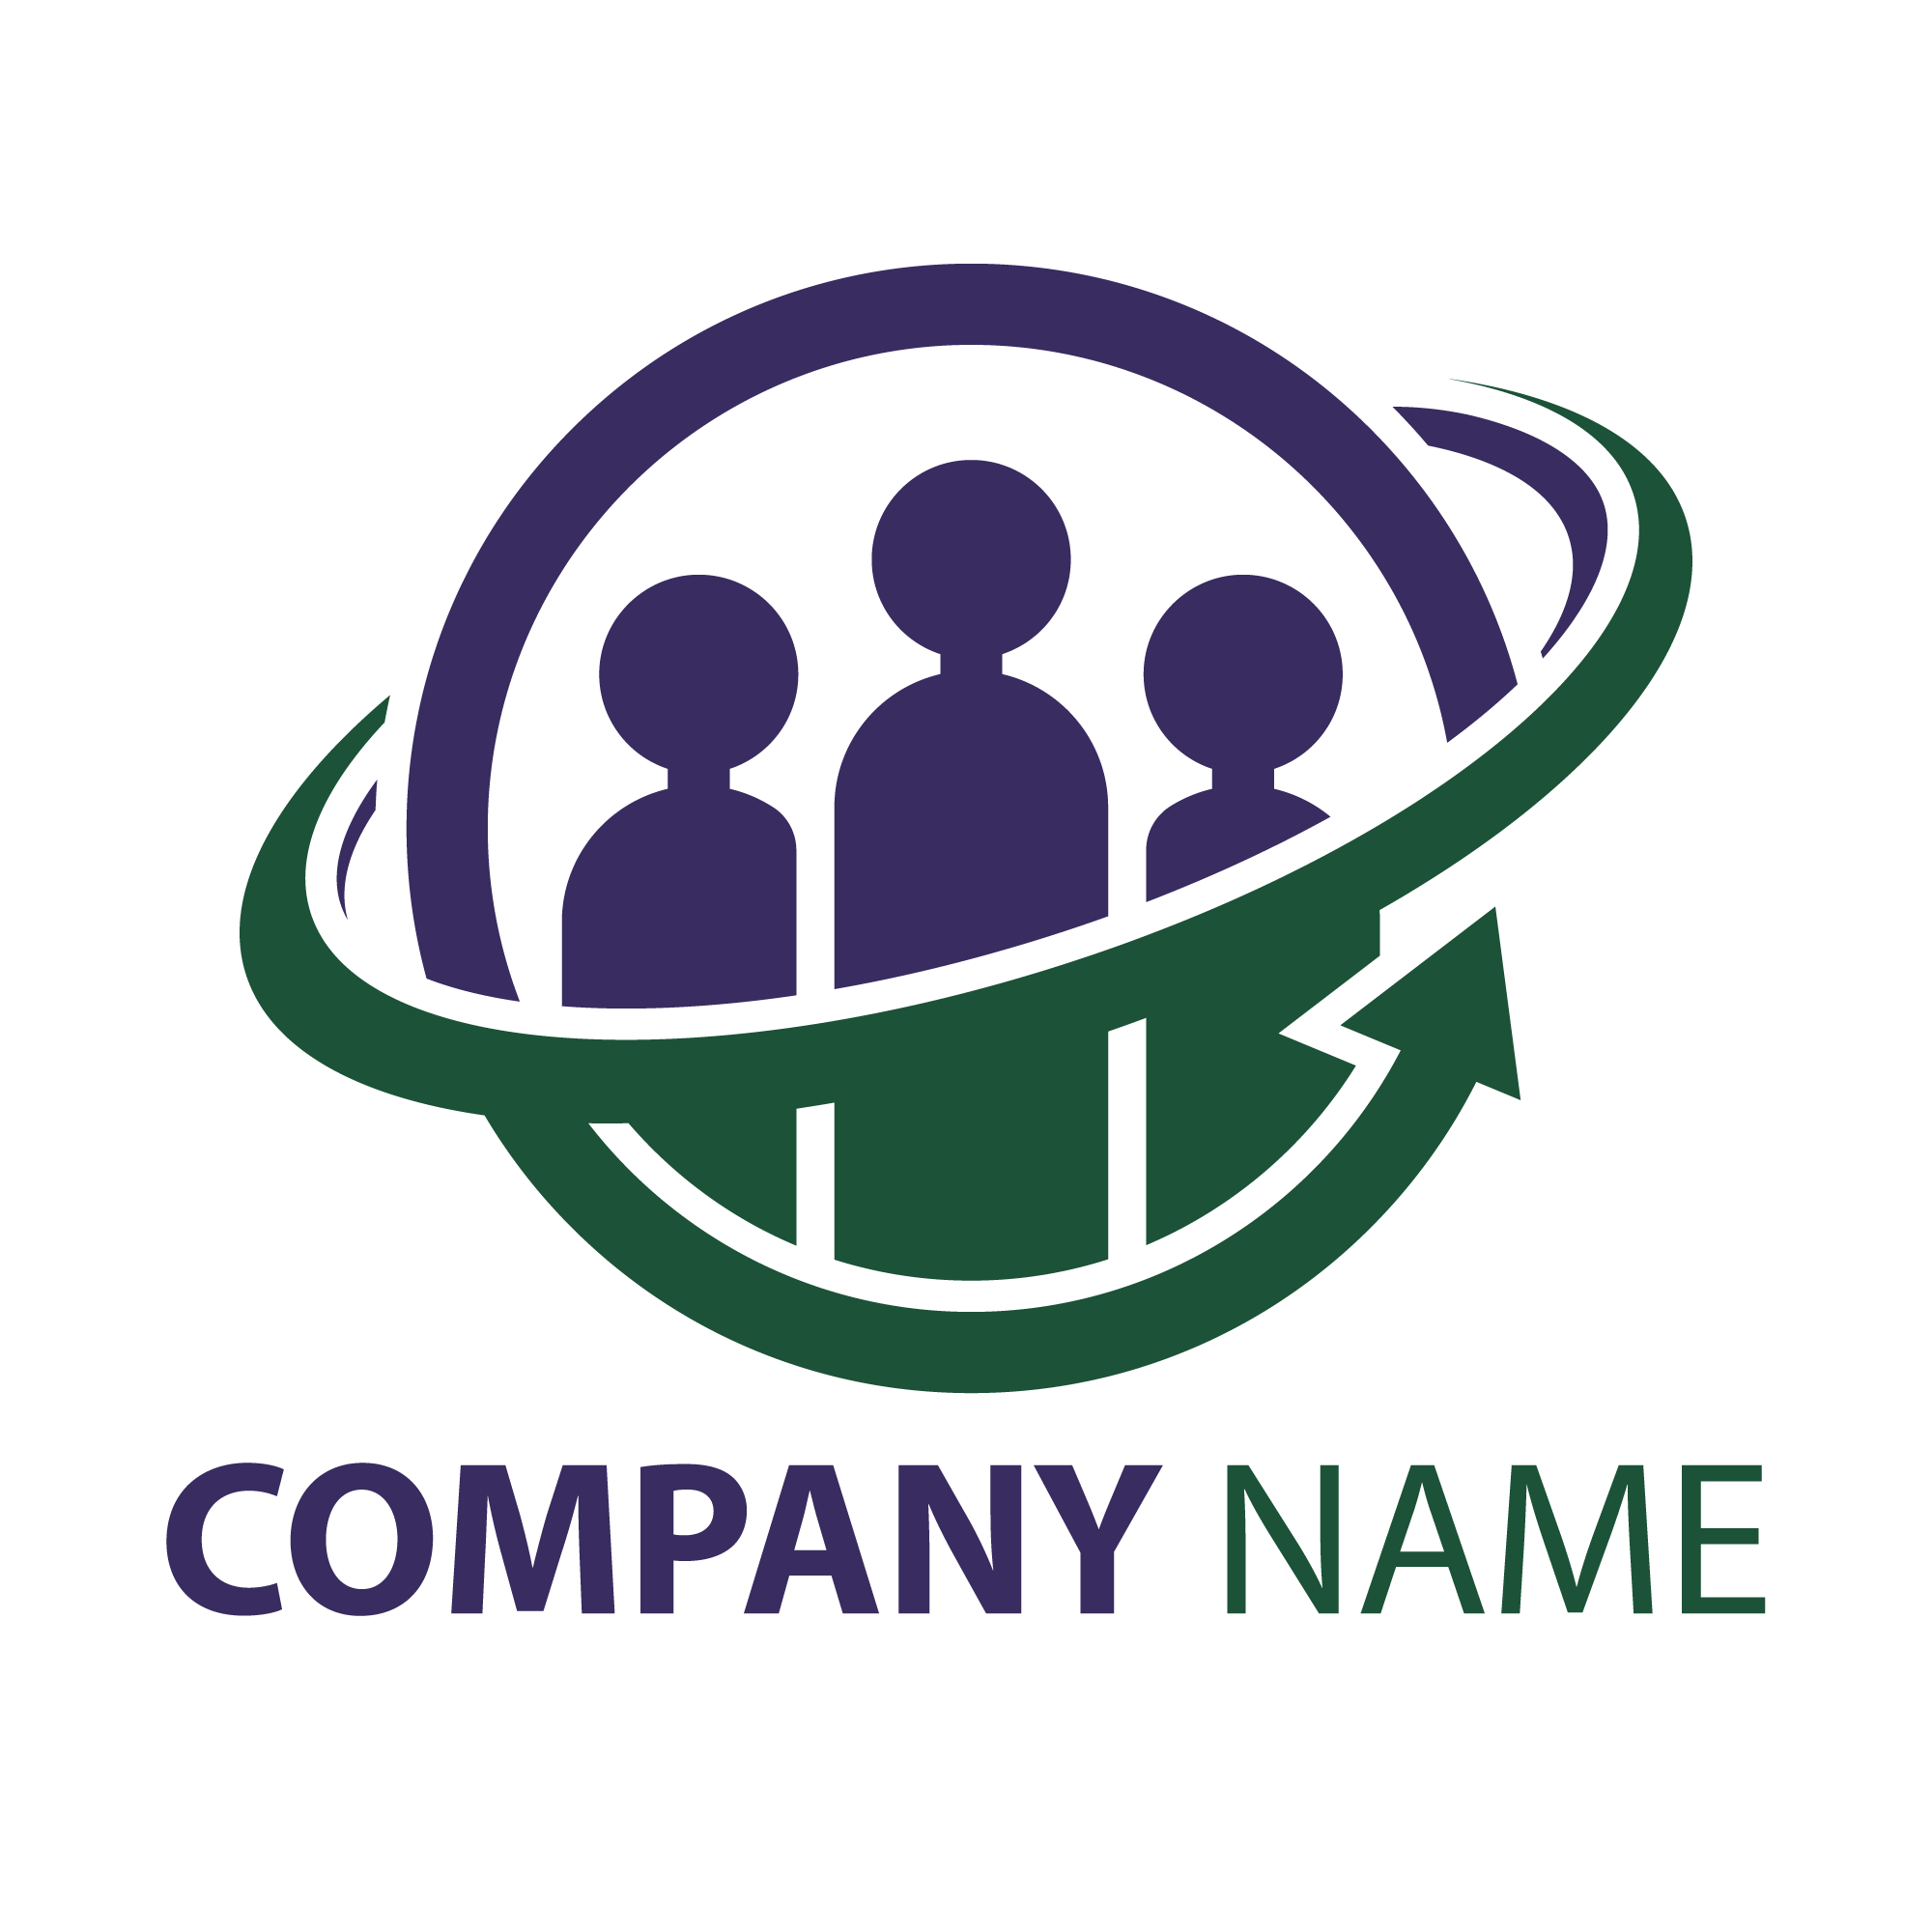 Family medicine group logo design | Logo design contest | 99designs